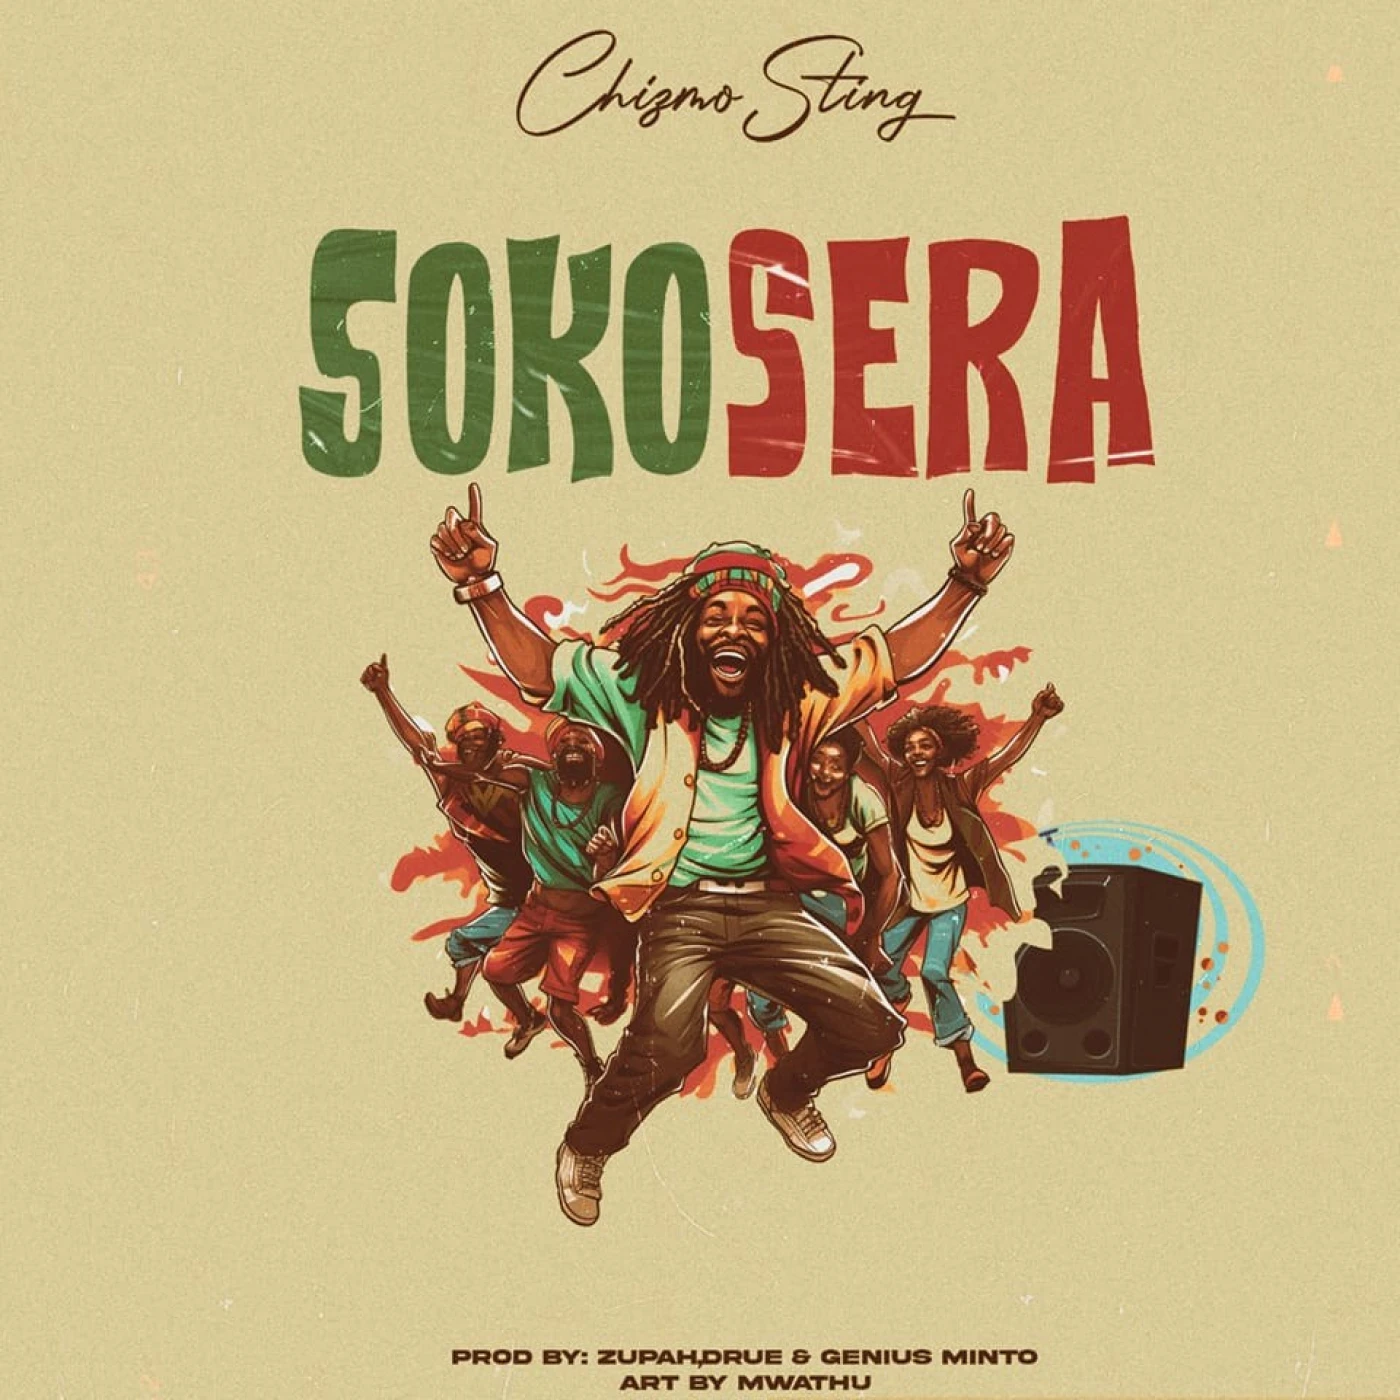 sokosera-chizmo-sting-Just Malawi Music